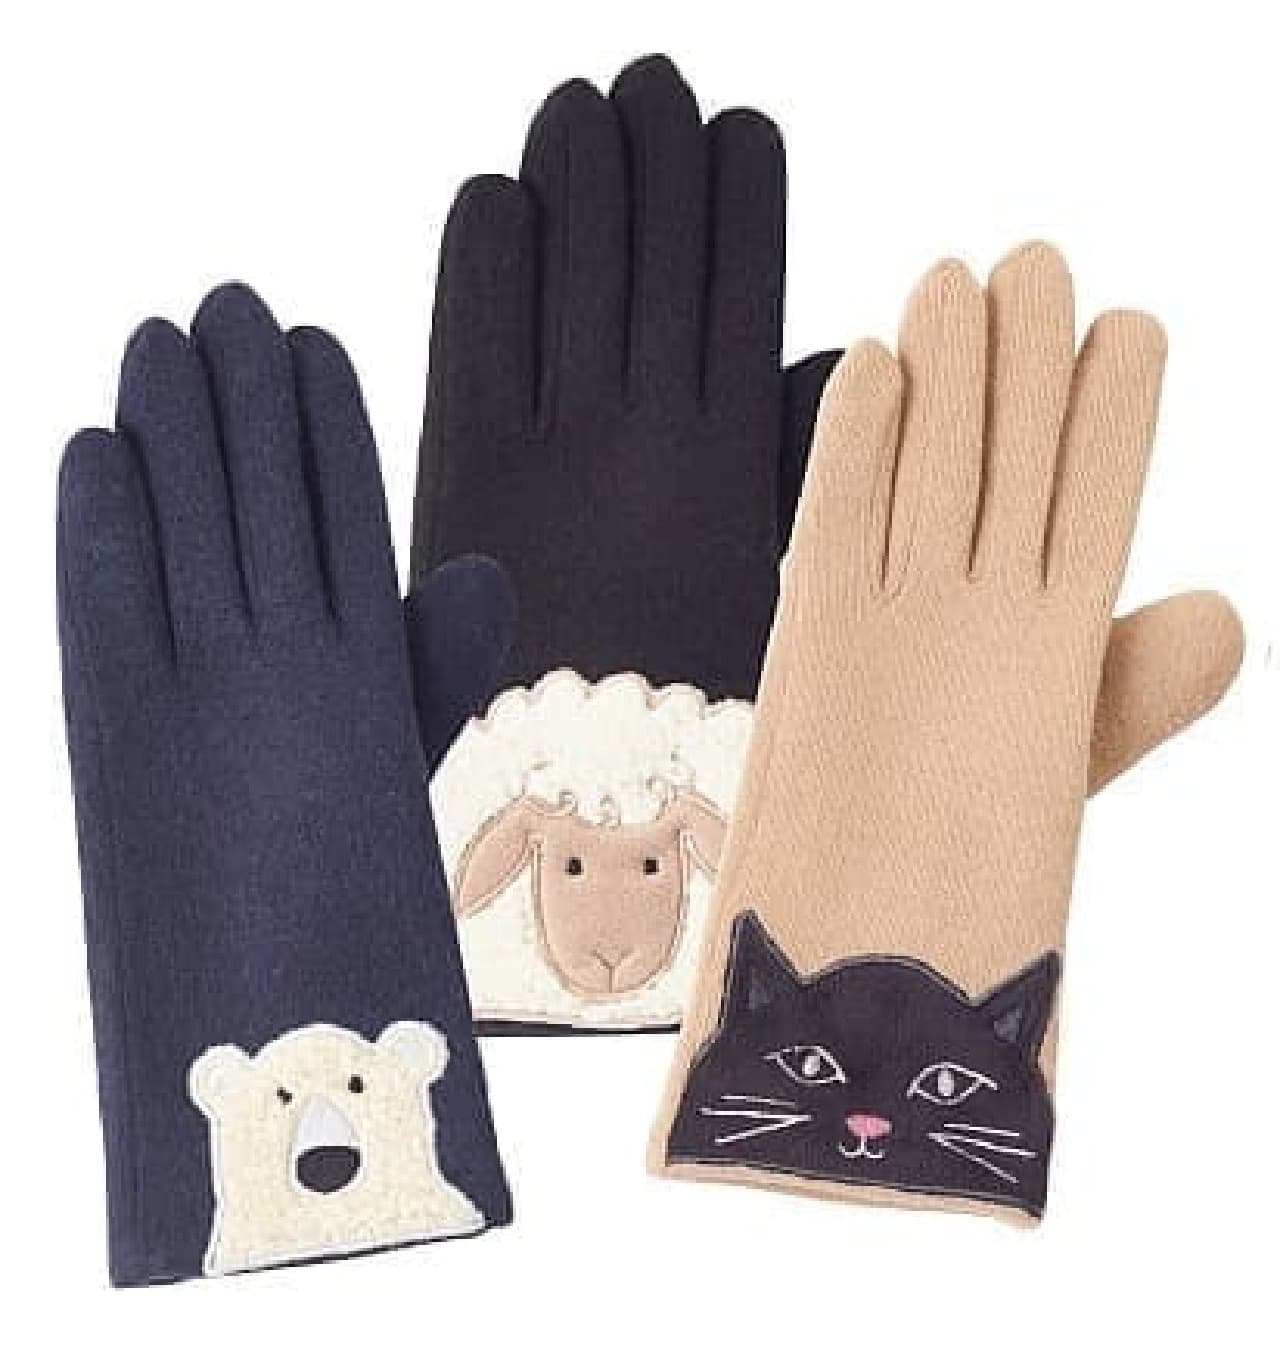 Animal gloves